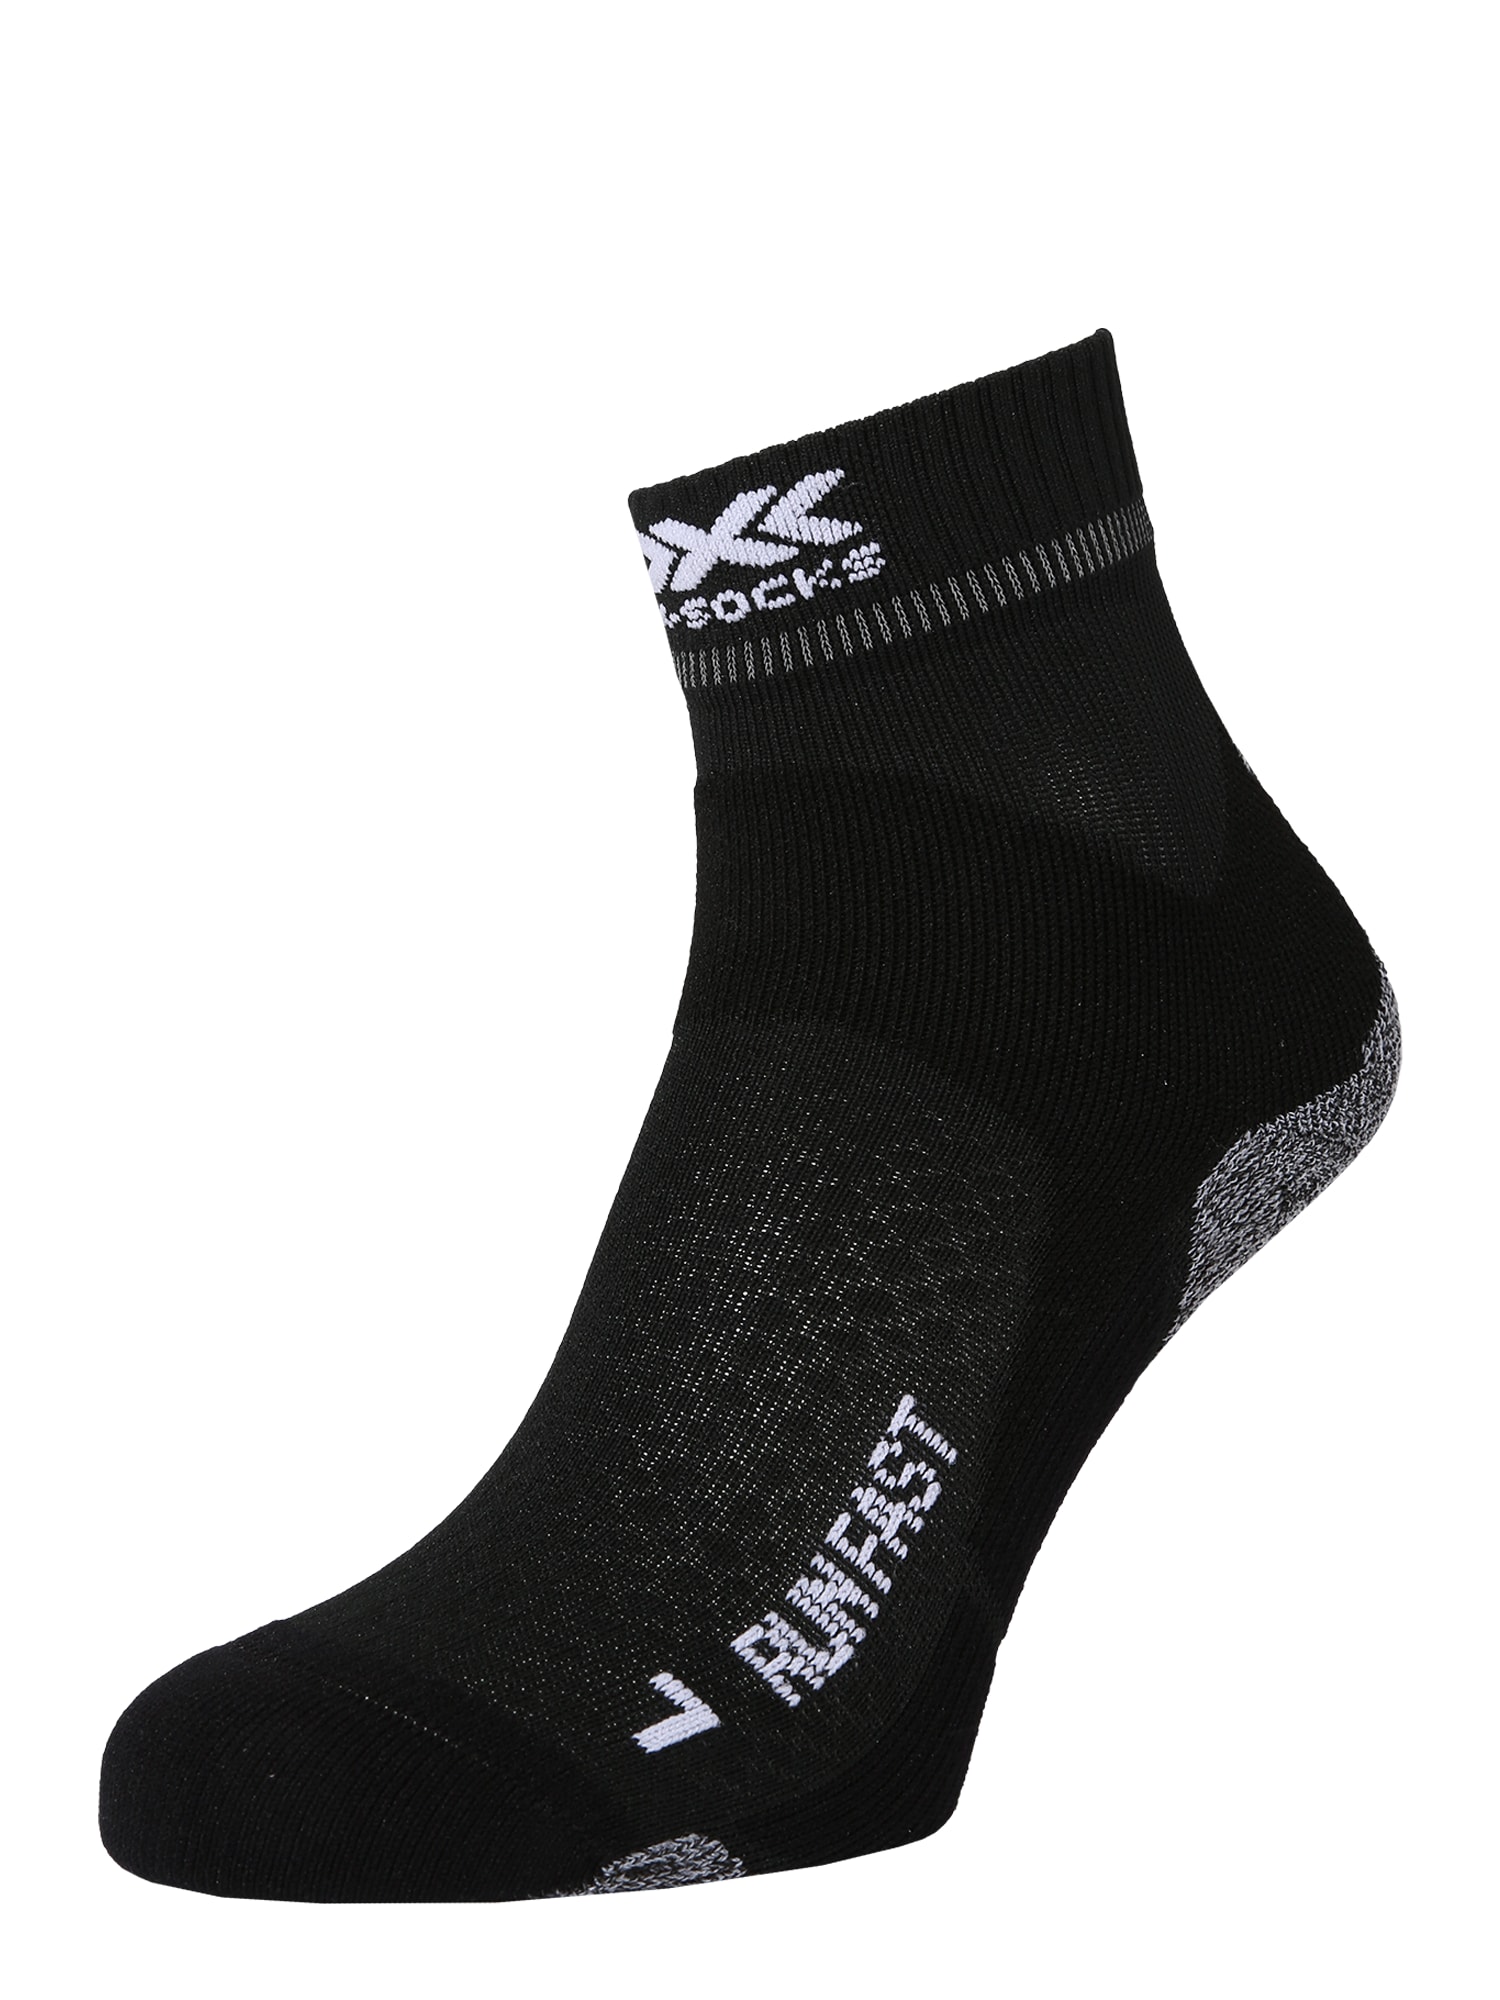 X-SOCKS Sportinės kojinės juoda / šviesiai pilka